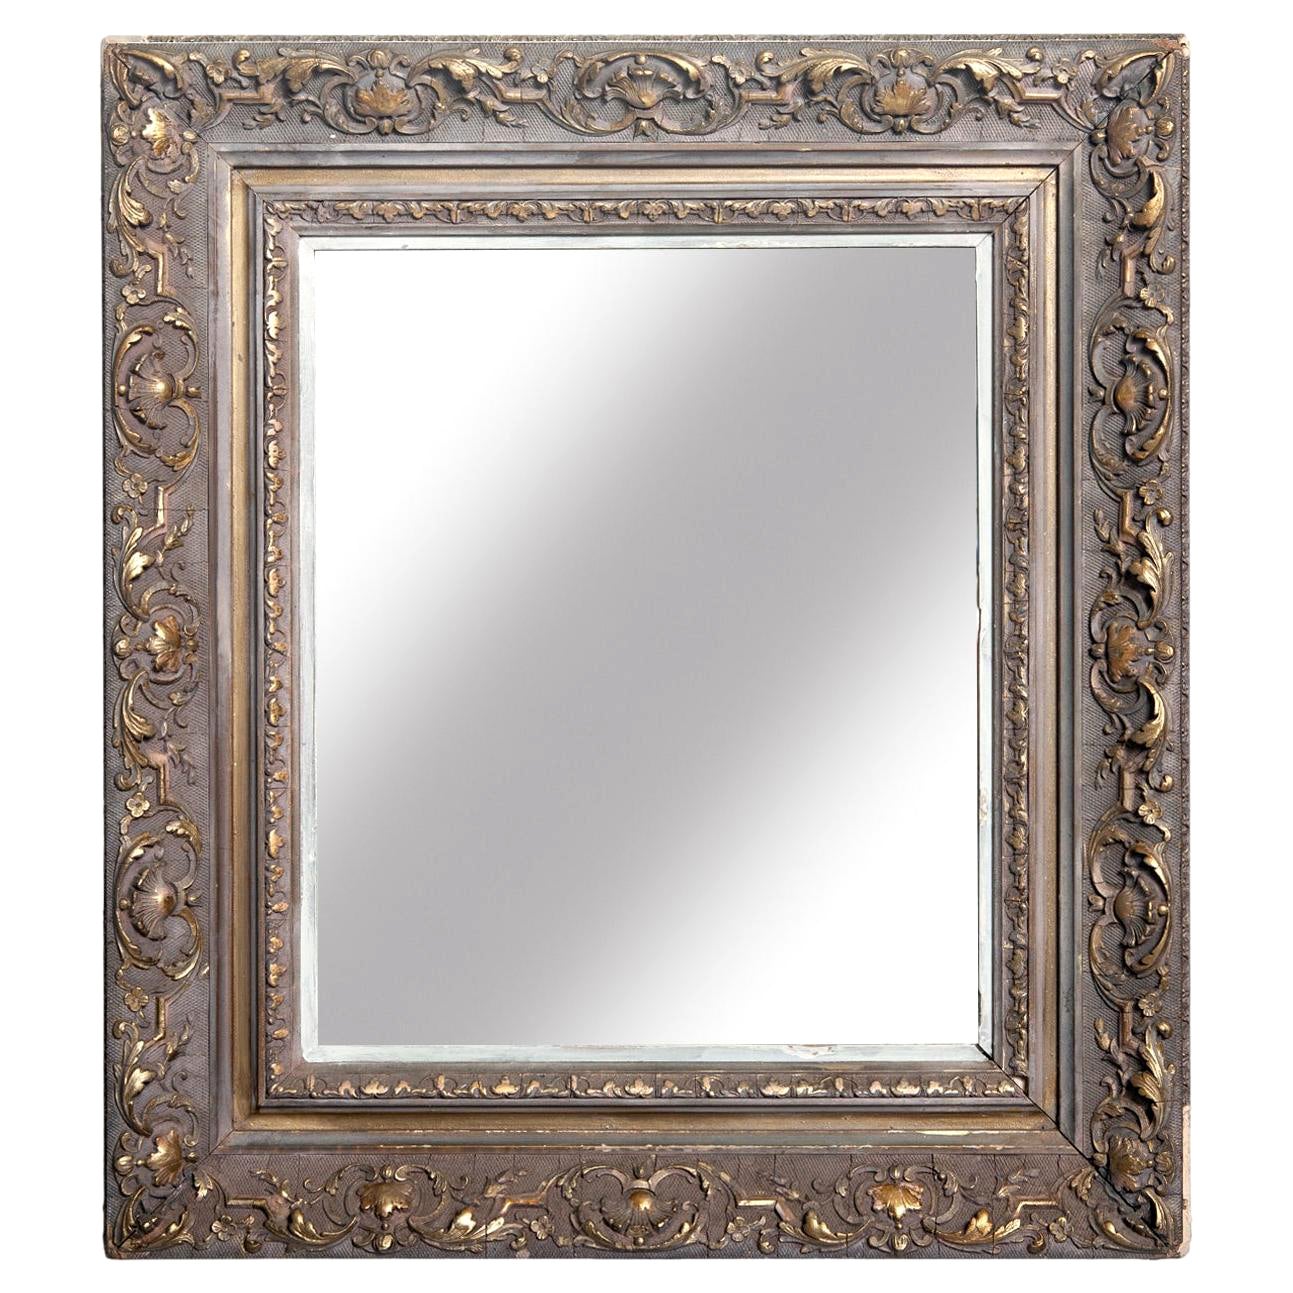 Viktorianischer rechteckiger bemalter Spiegel mit vergoldeten Akzenten